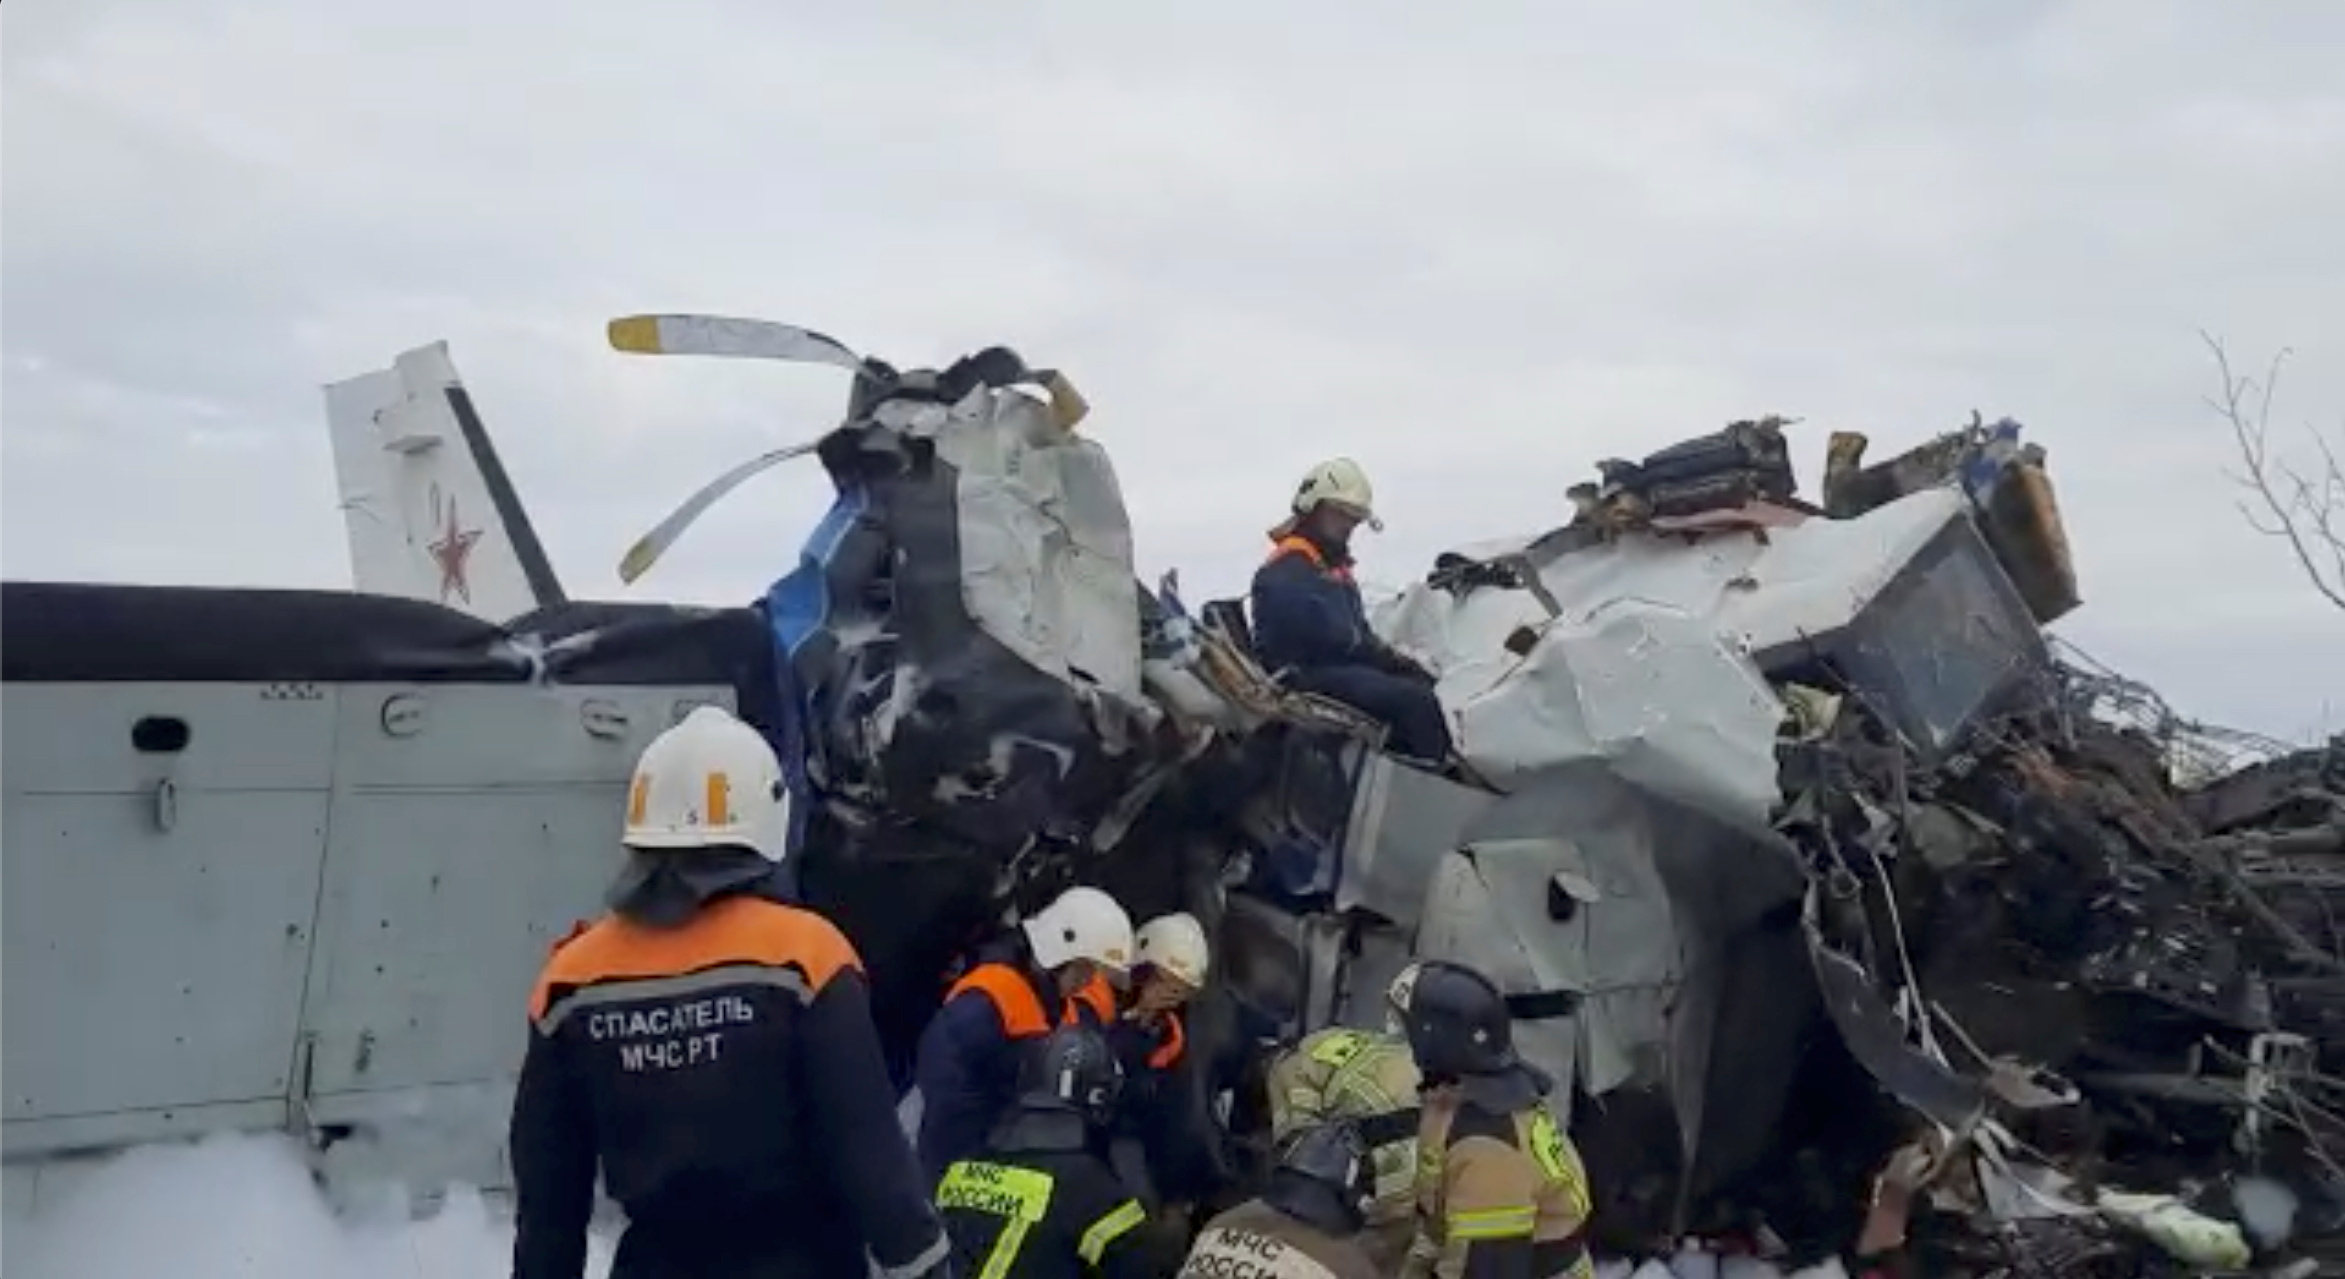 يعمل اختصاصيو الطوارئ في موقع تحطم الطائرة L-410 بالقرب من مدينة مينسيلينسك في جمهورية تتارستان ، روسيا ، 10 أكتوبر 2021 ، في هذه الصورة الثابتة المأخوذة من الفيديو.  وزارة الطوارئ الروسية / منشور عبر رويترز